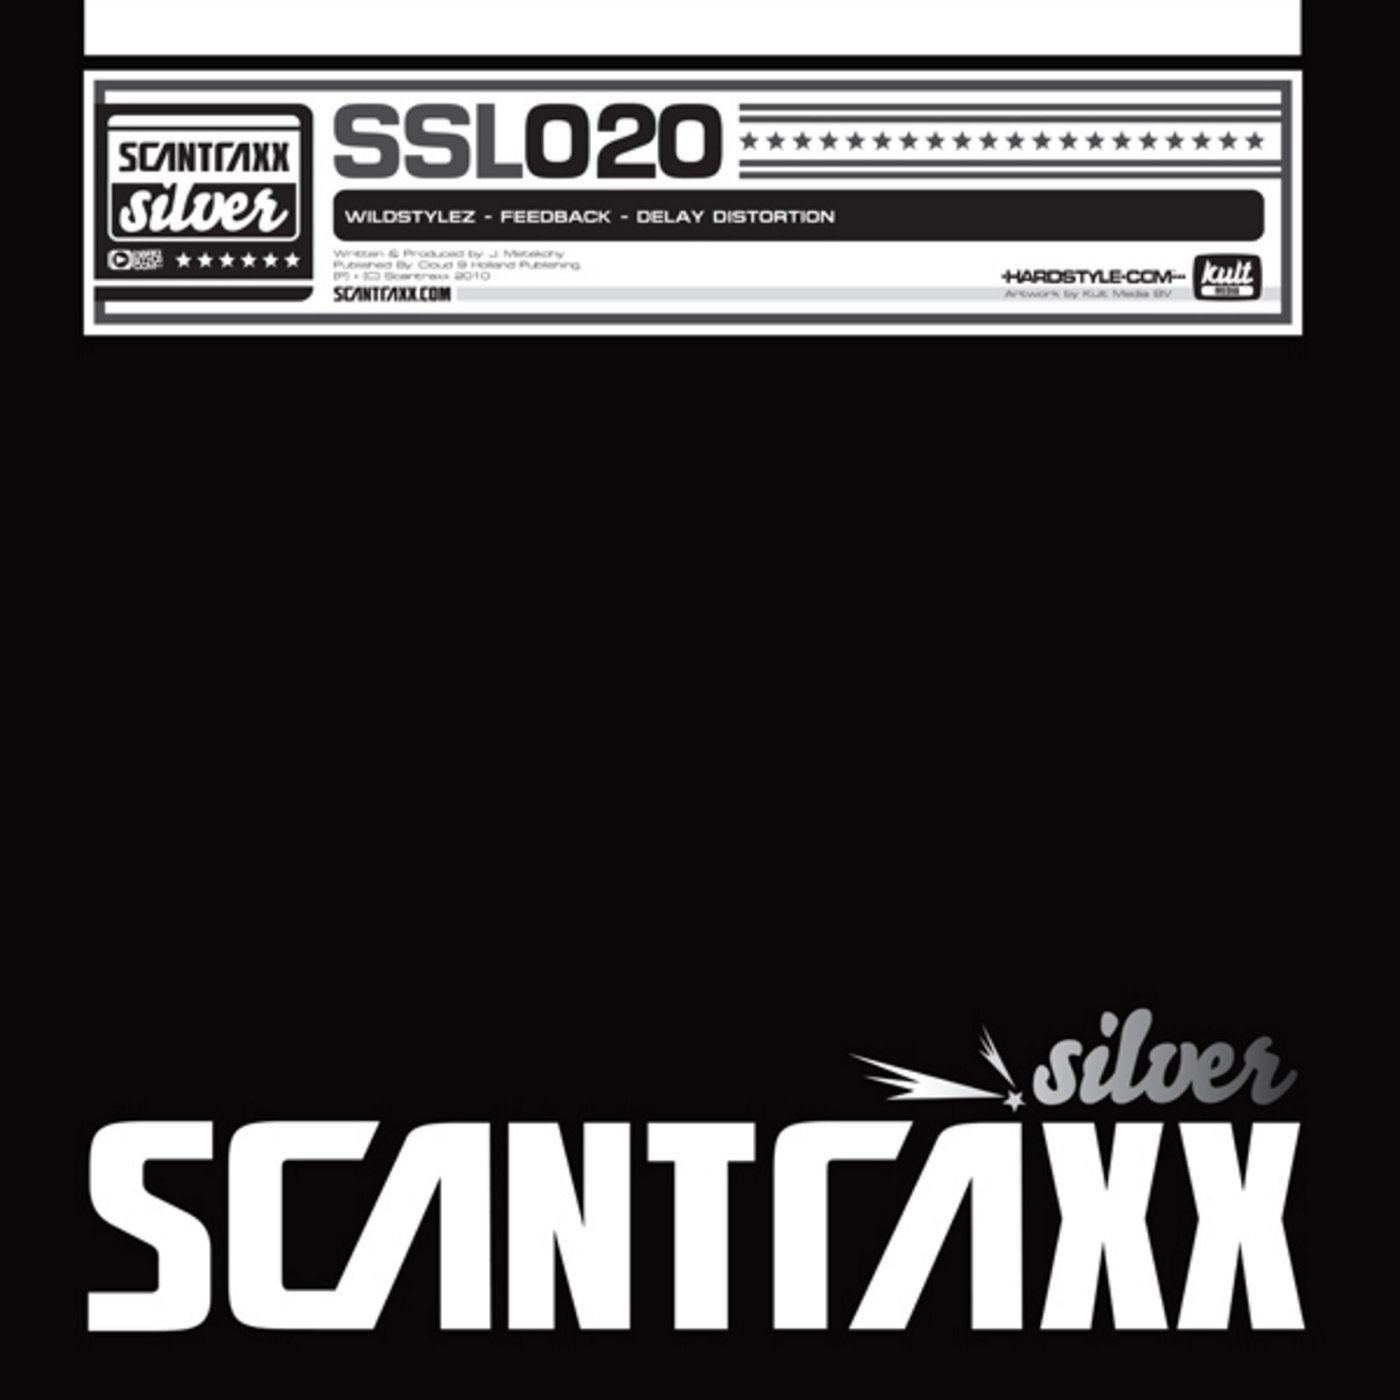 Scantraxx Silver 020